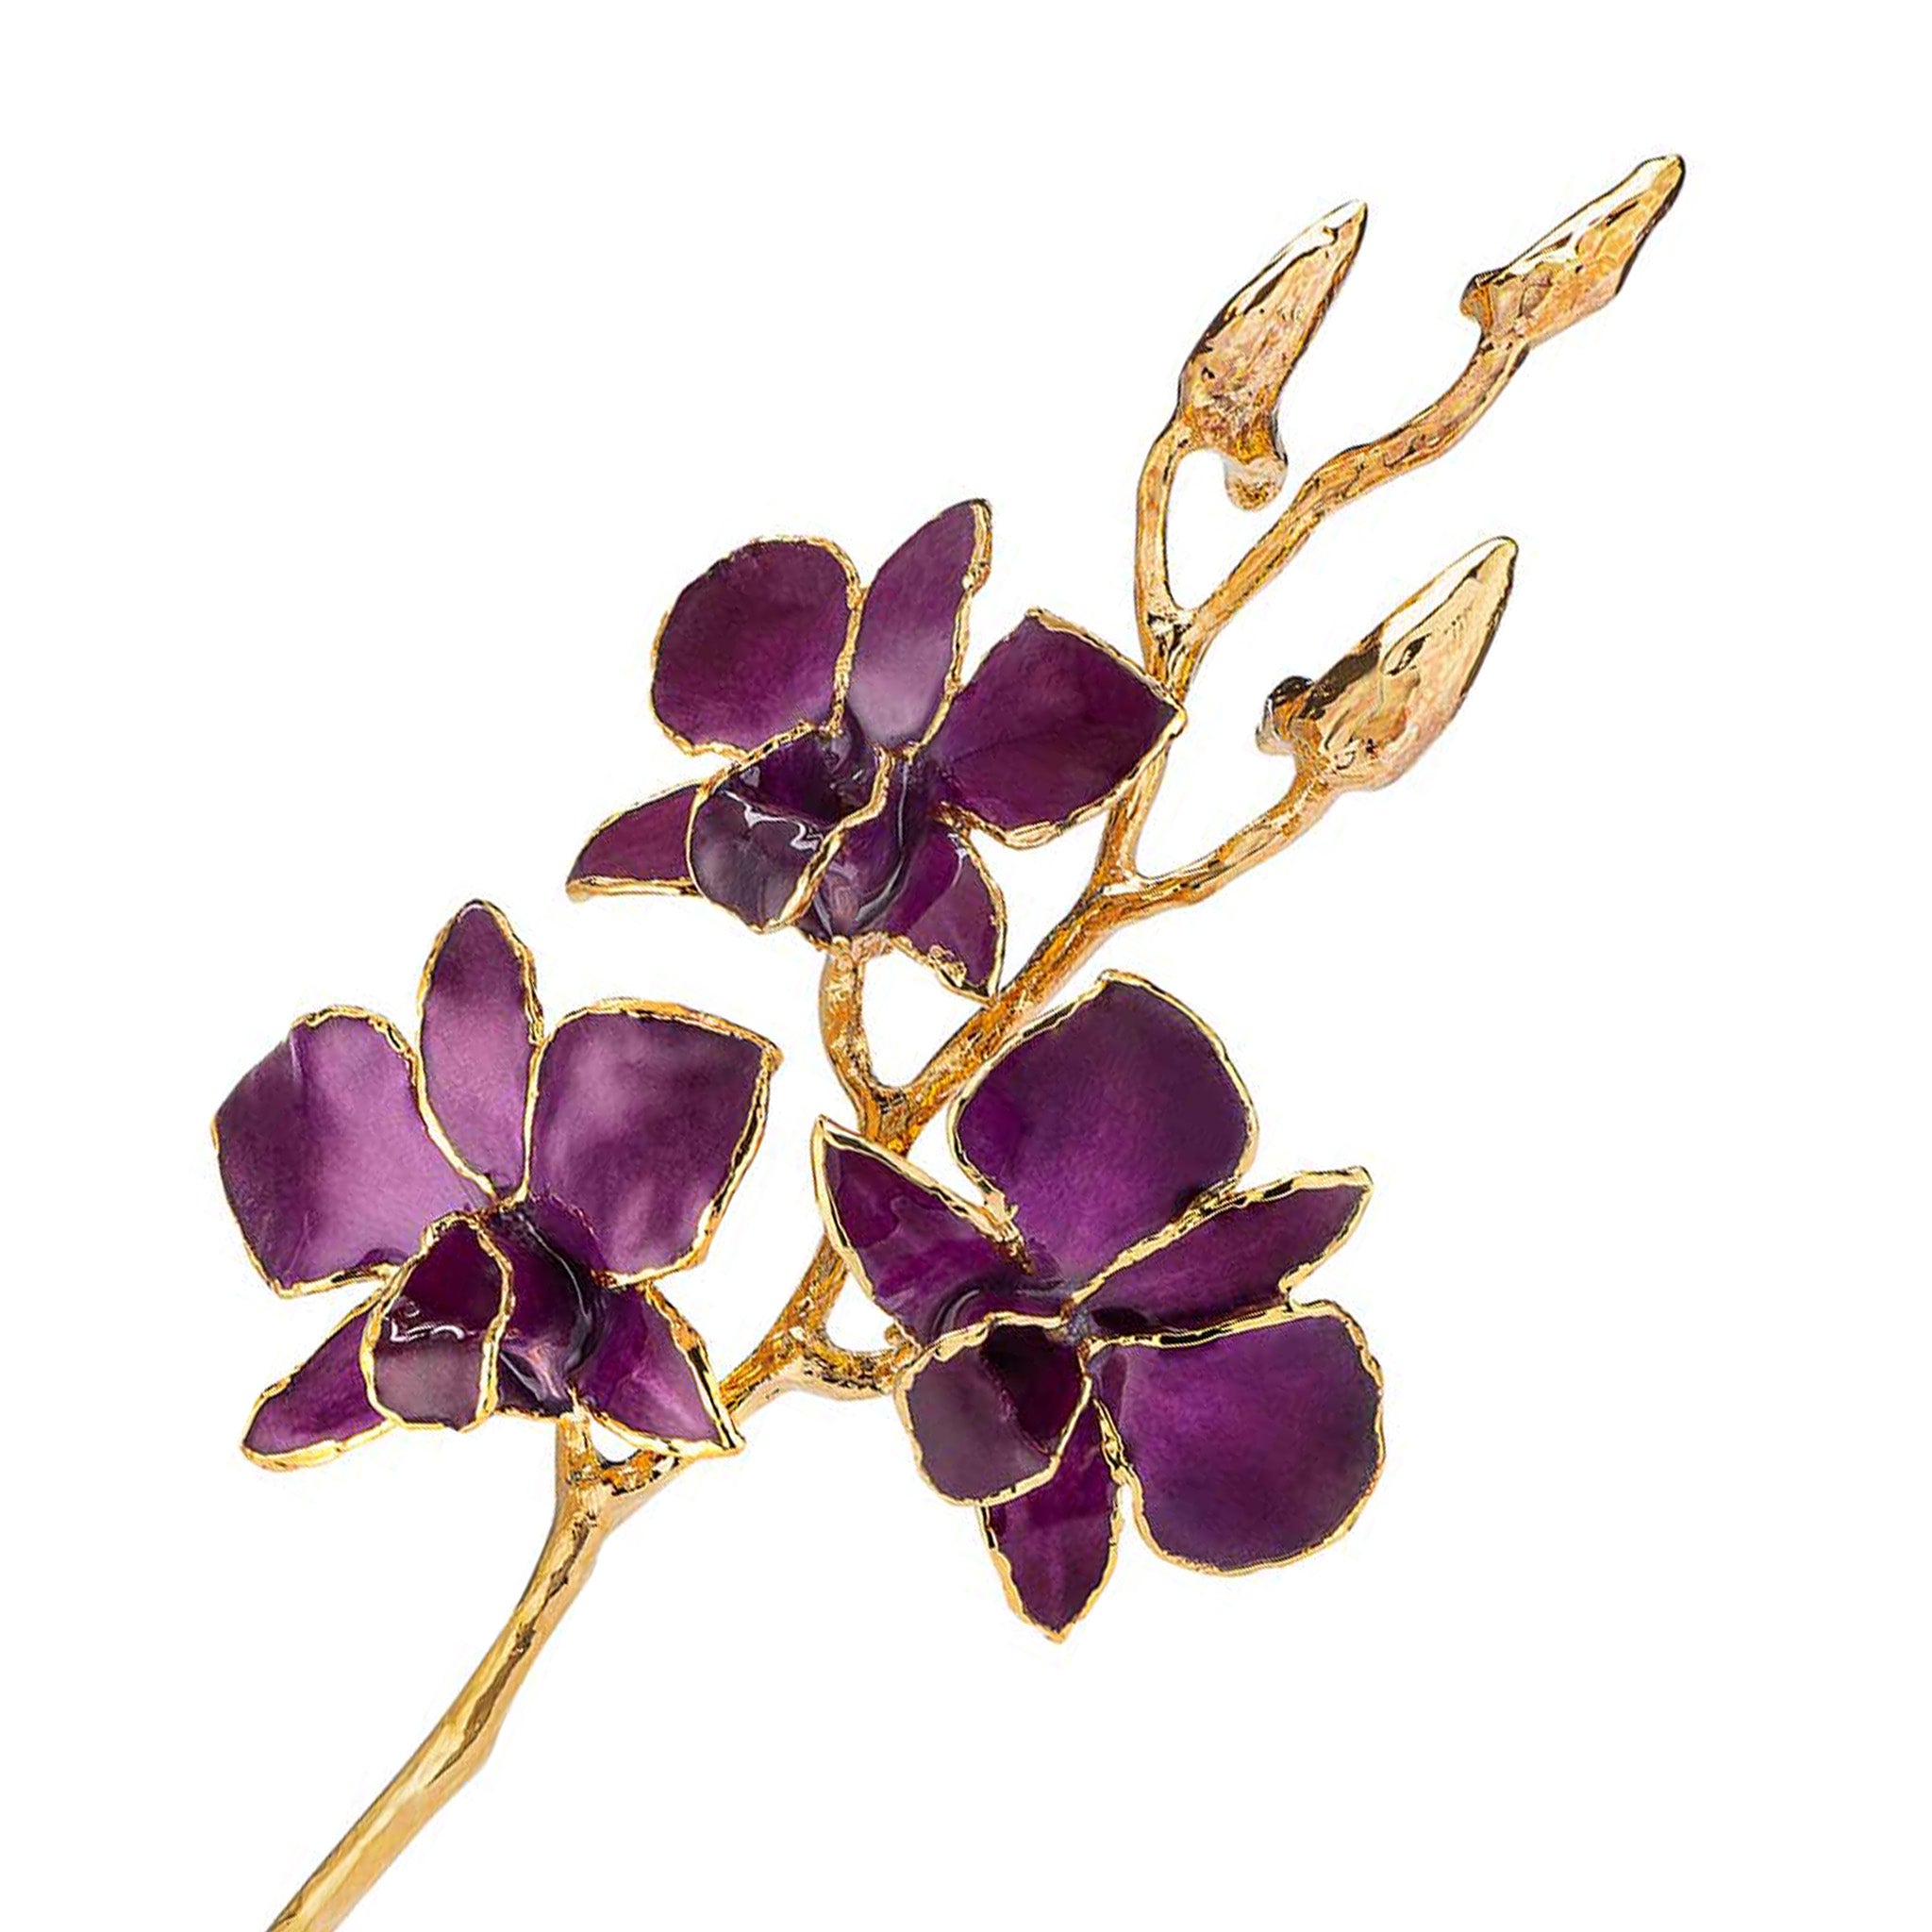 24K Gold Orchid - Lavender Lace